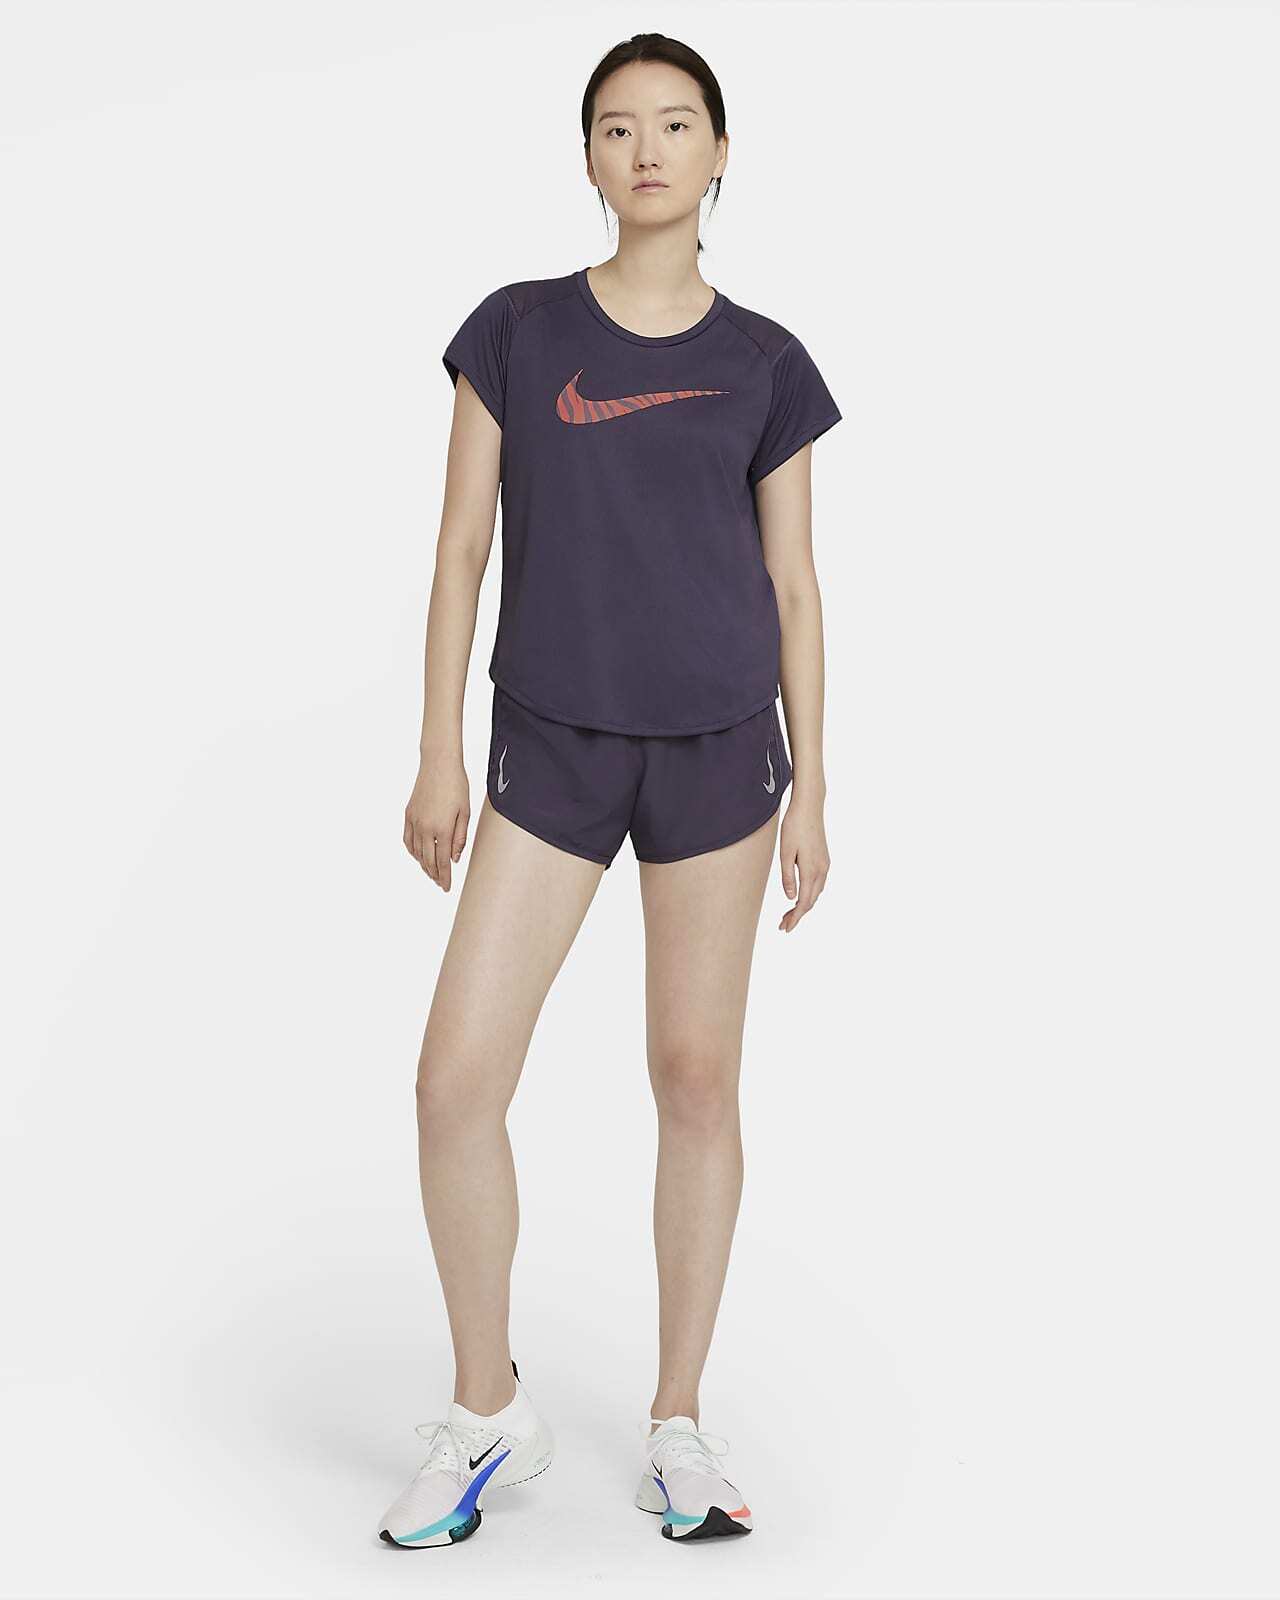 Áo tay ngắn thể thao nữ Nike AS W NK ICON CLASH RUN SS GX thích hợp mặc cho mùa nóng